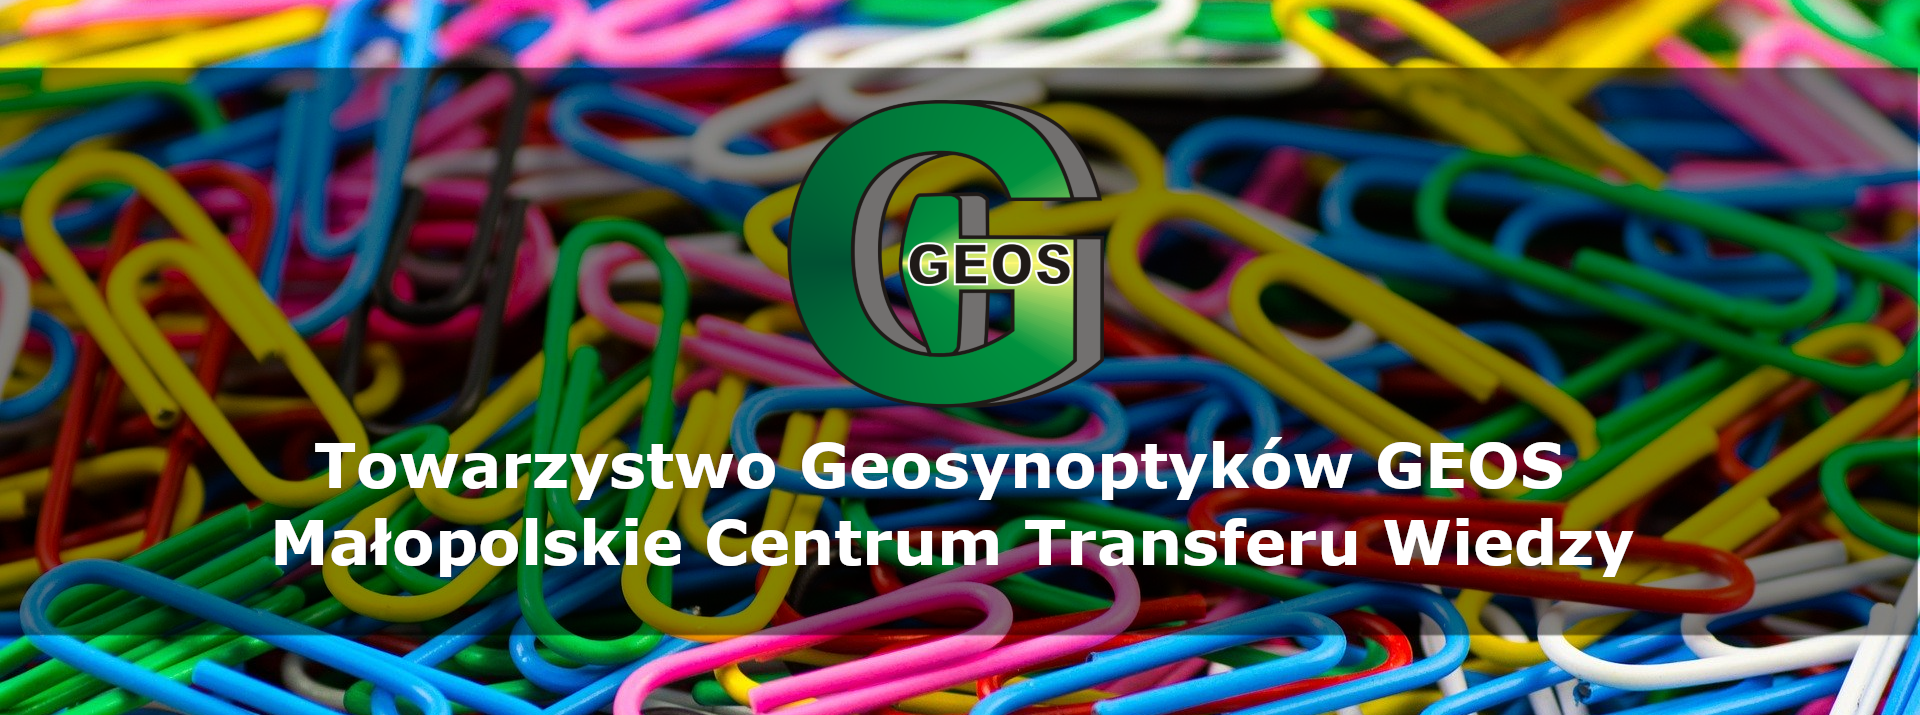 Towarzystwo Geosynoptyków GEOS 